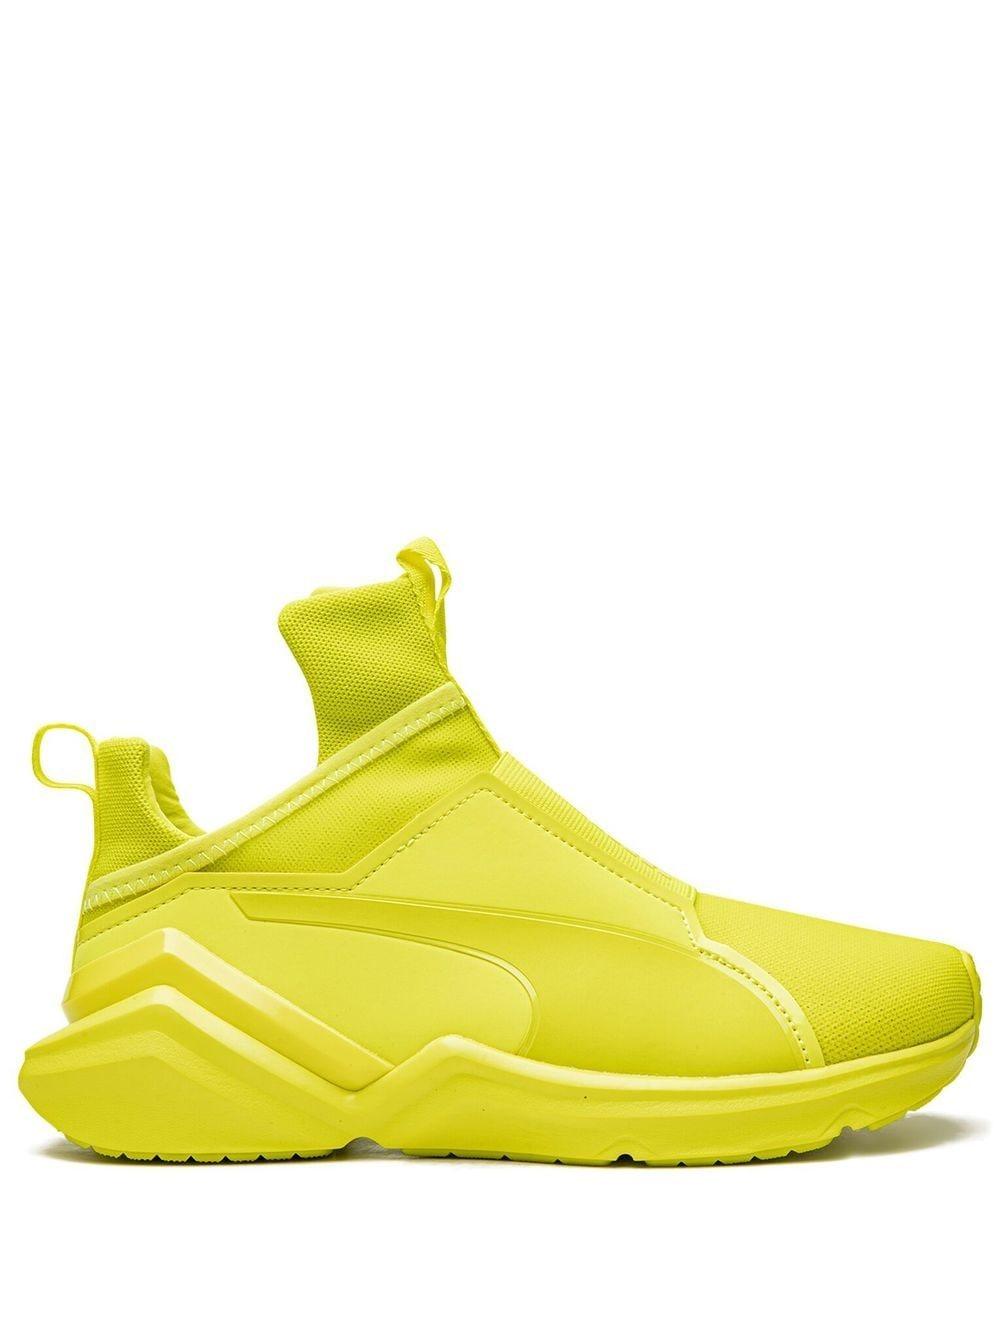 PUMA Fierce 2 Low-top Sneakers in Yellow | Lyst